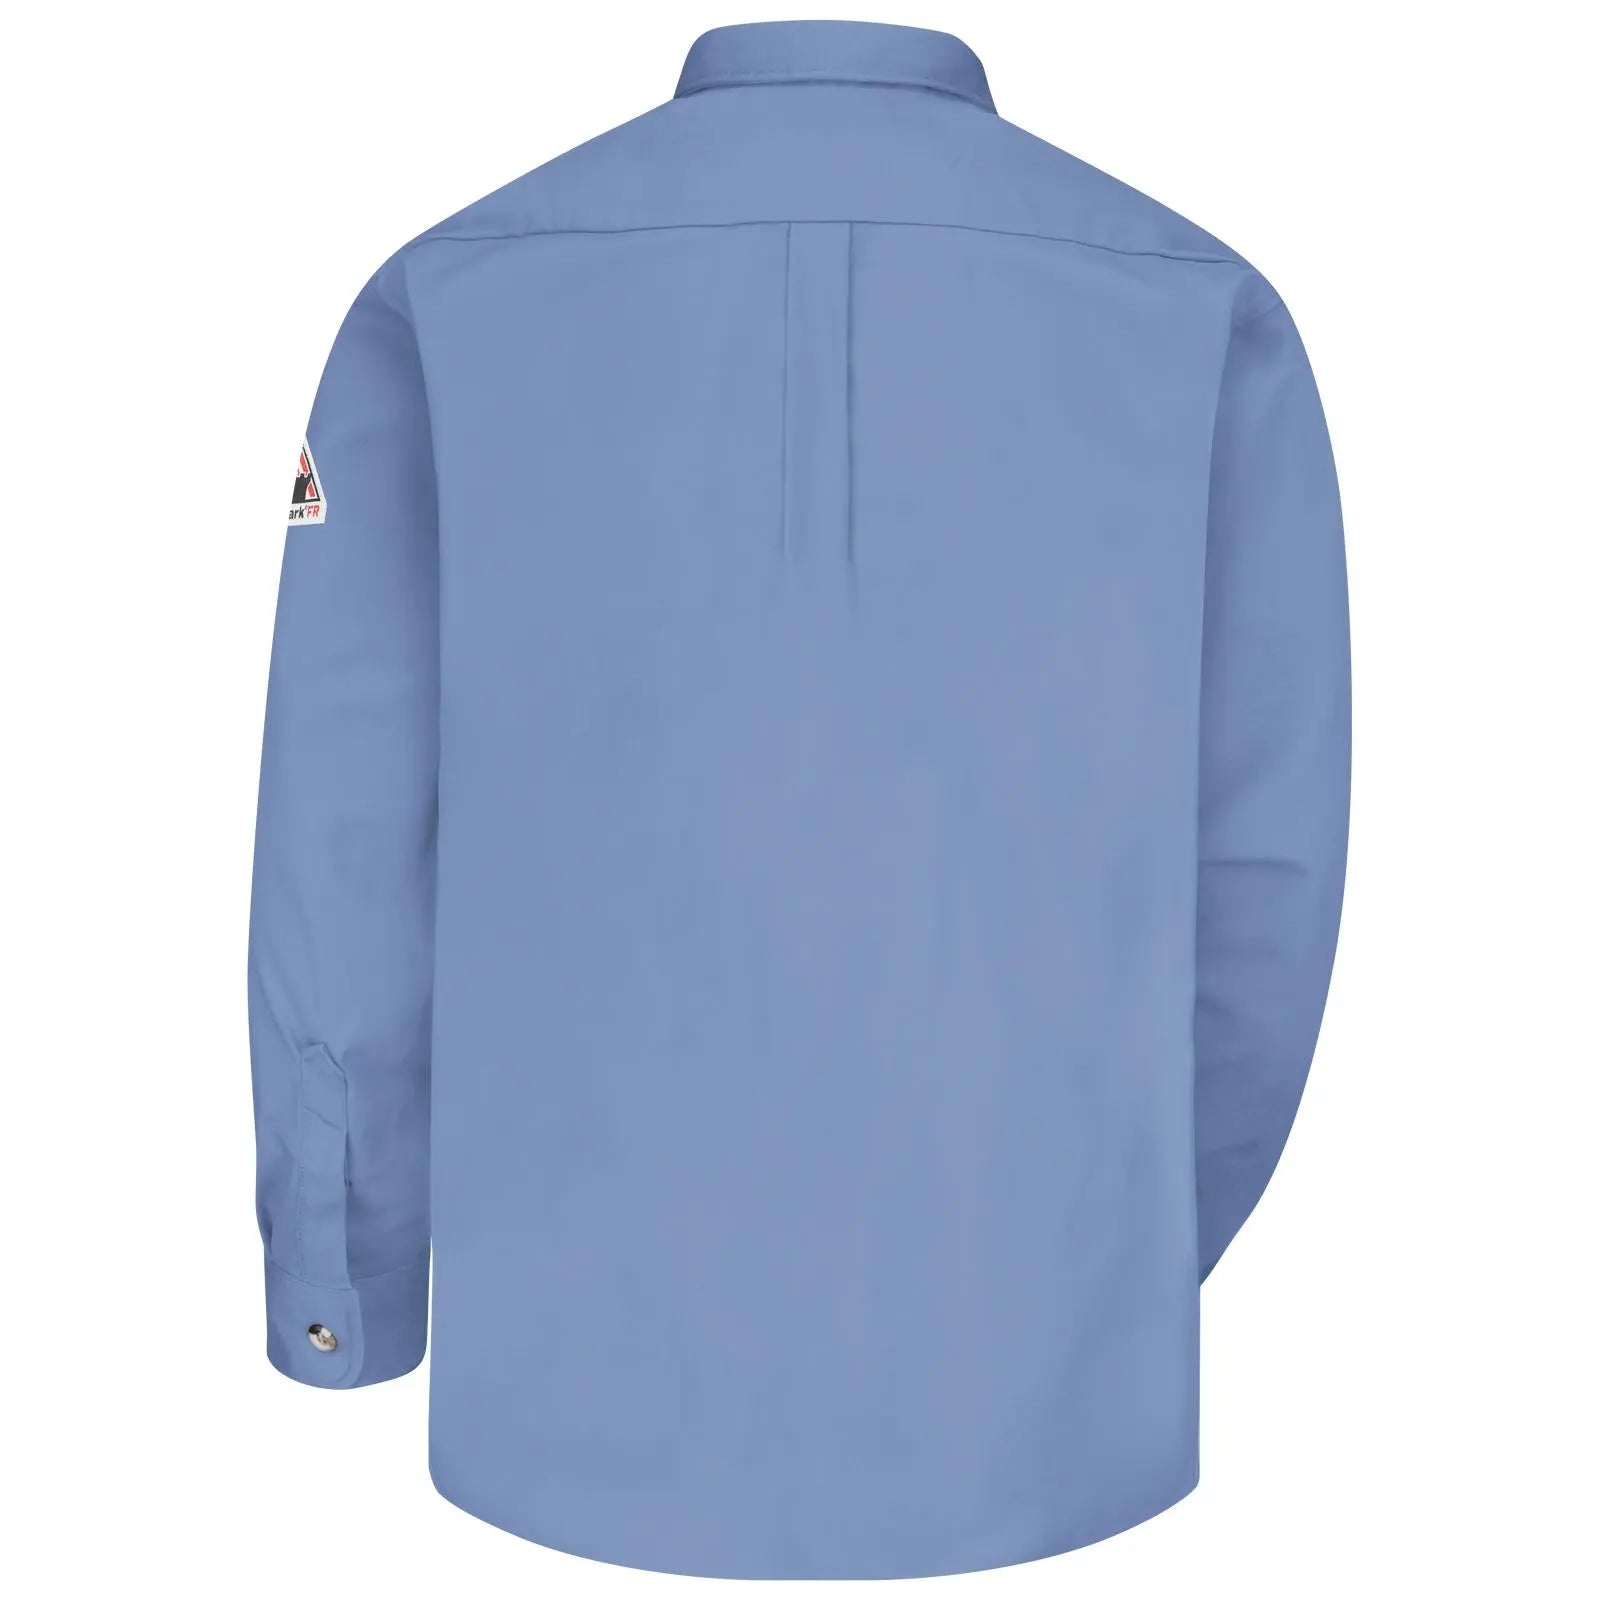 BULWARK - Men's Midweight FR Dress Uniform Shirt, Medium Blue - Becker Safety and Supply